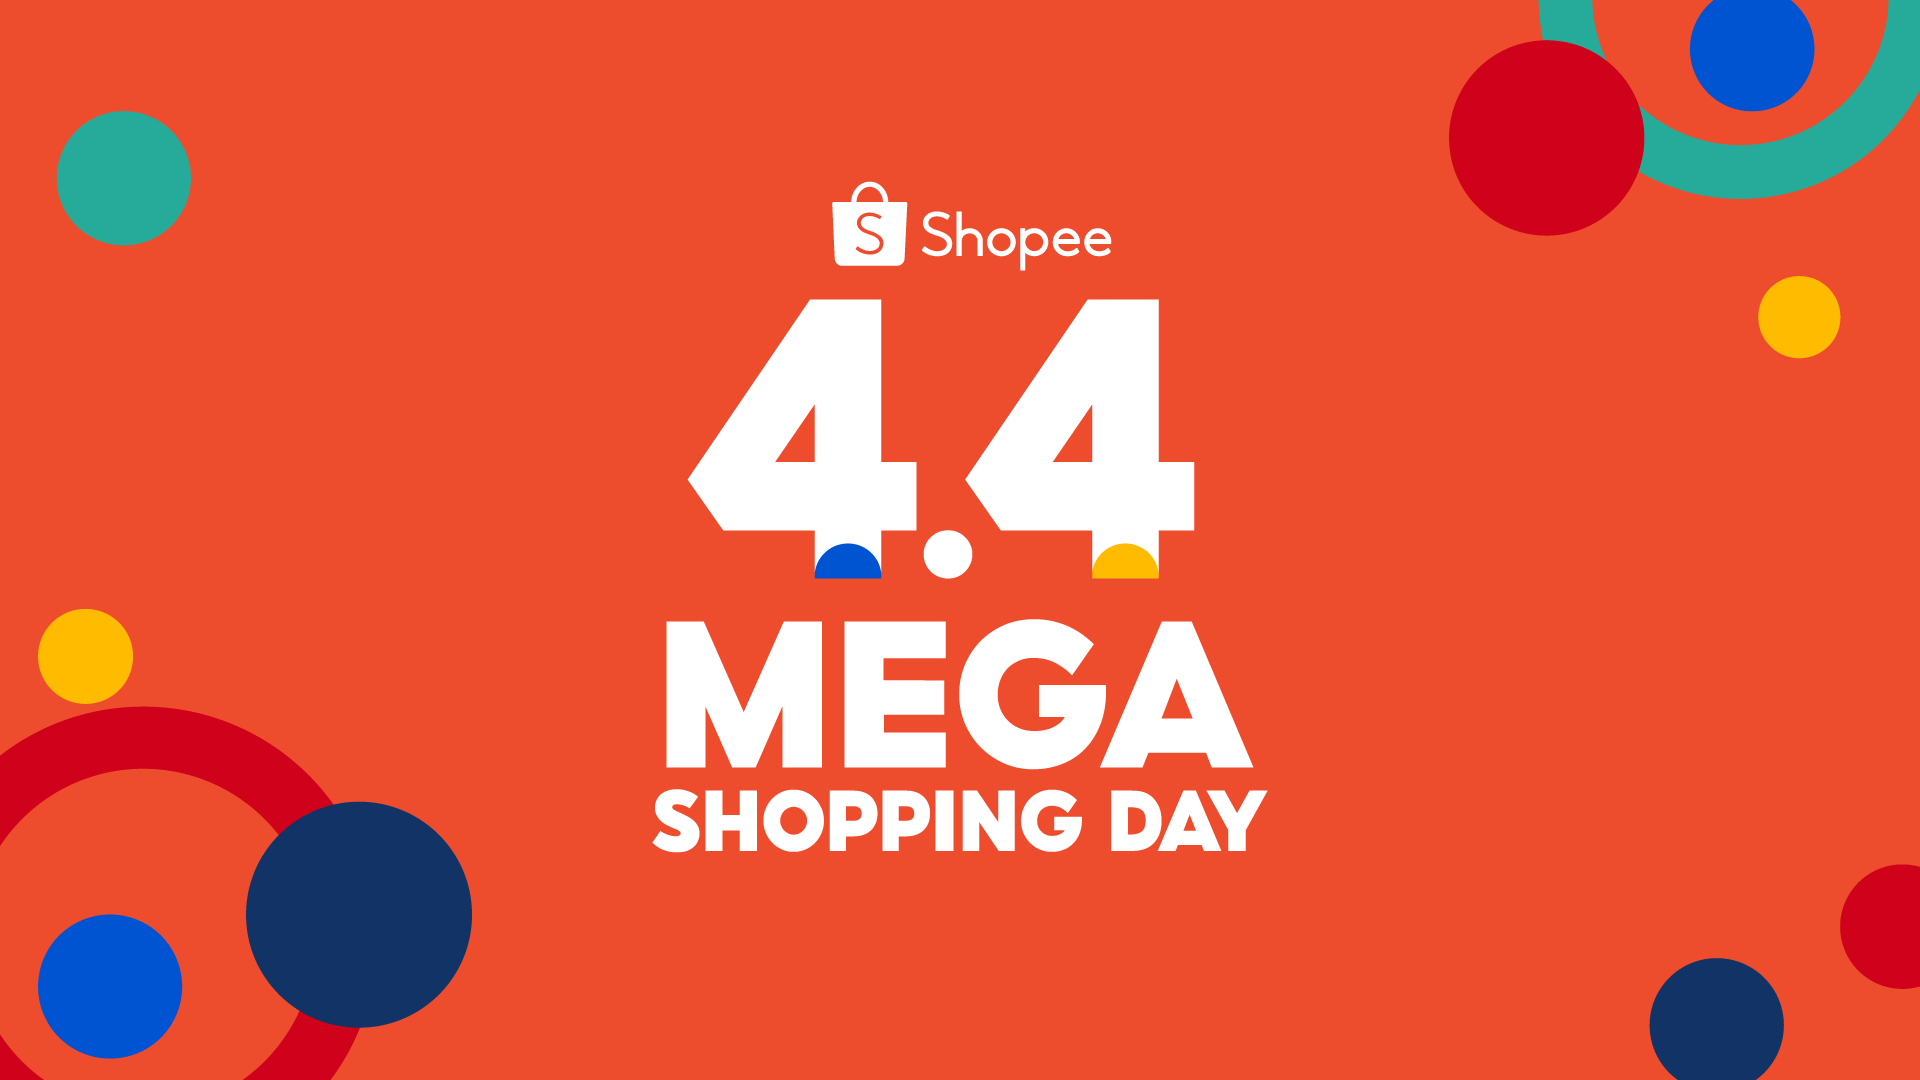 Ngày mua sắm lớn nhất năm - Mega Shopping Day đã đến rồi! Tất cả sản phẩm chất lượng và giá cả phải chăng đều sẵn sàng cho bạn thỏa sức lựa chọn. Hãy truy cập vào hệ thống của chúng tôi để cùng trải nghiệm những ưu đãi số 1 hiện nay.